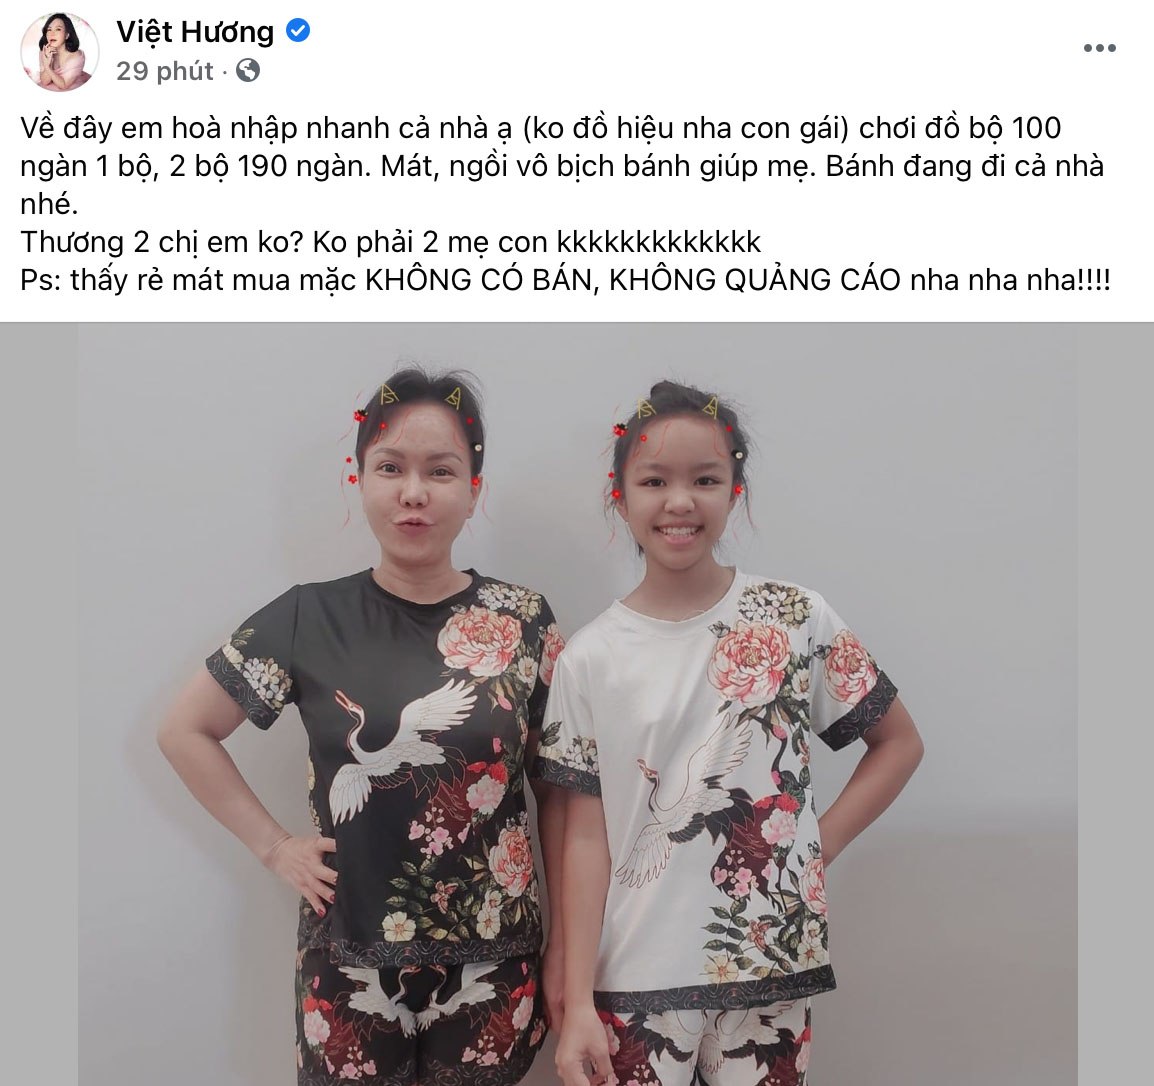 Tại biệt thự tiền tỷ, Việt Hương cho con gái mặc bộ đồ 100k, kiên quyết nói không với hàng hiệu - 5